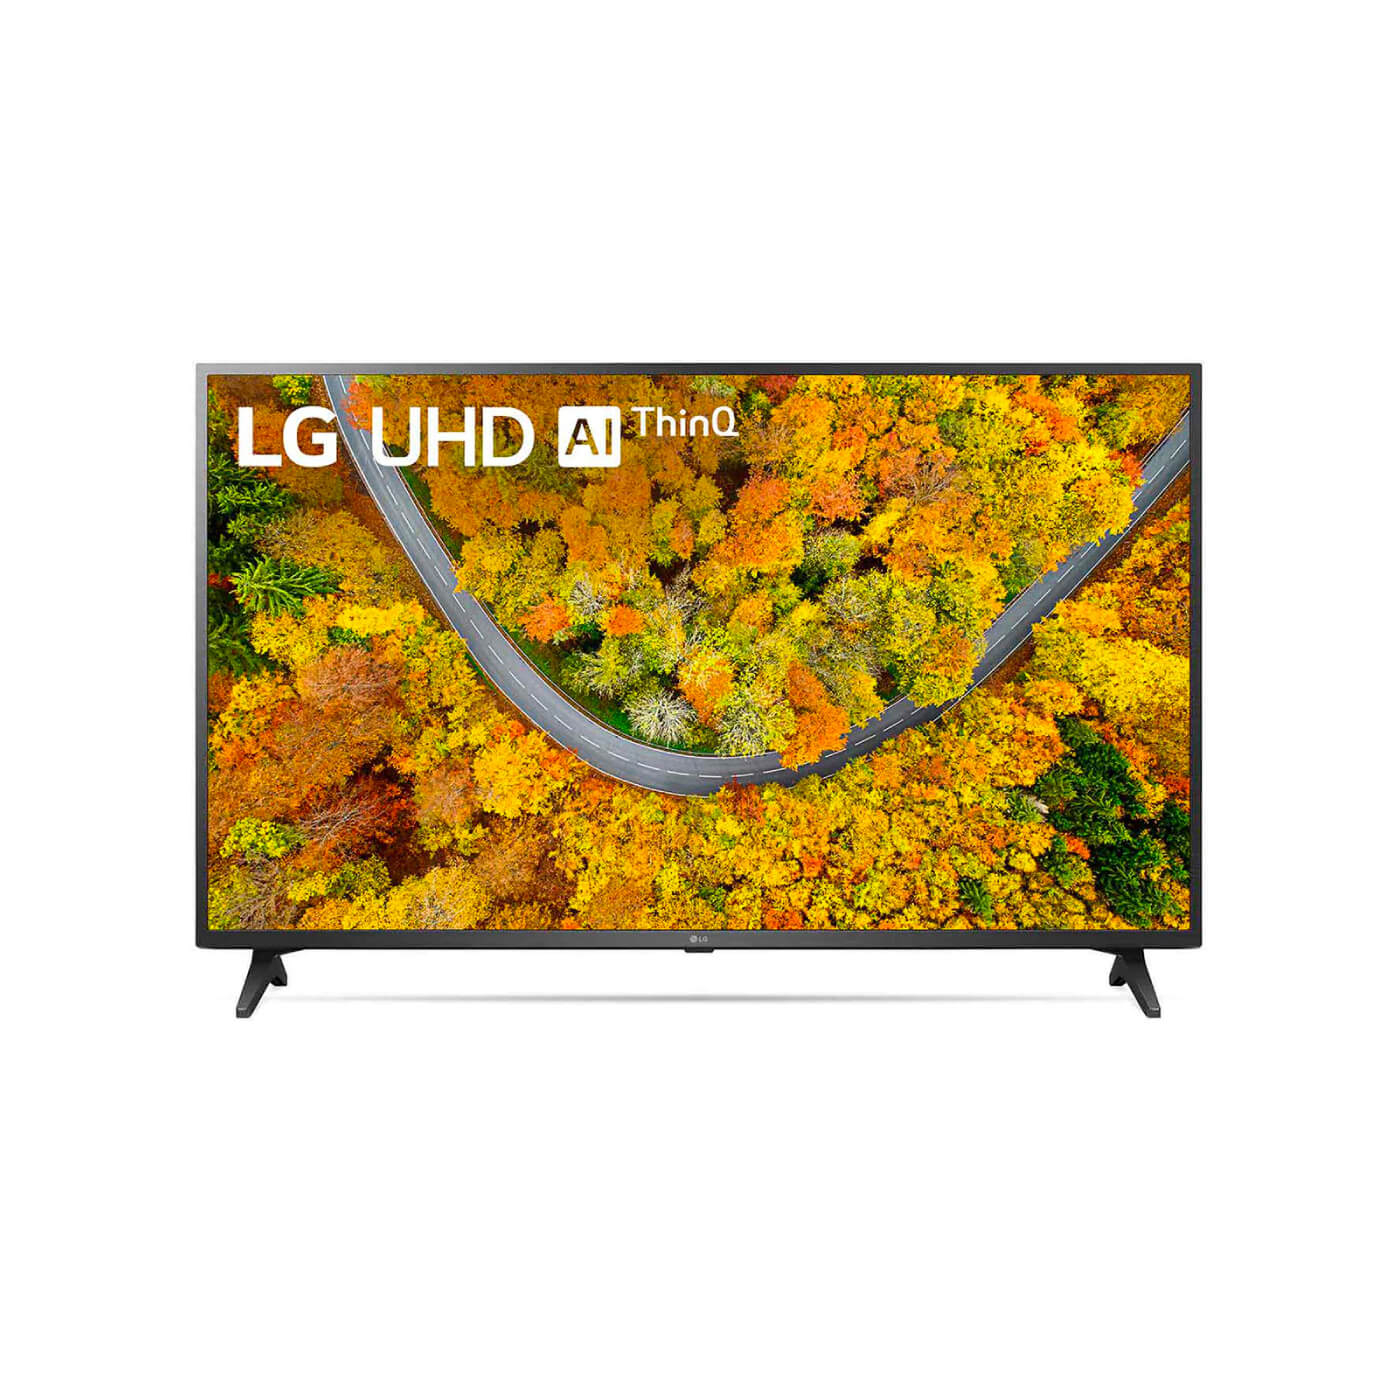  LG 50UK6300BUB 50 pulgadas 50 pulgadas 50 pulgadas 4K HDR Smart  LED 2160P Ultra HD UHD TV TruMotion 120 con AI ThinQ : Electrónica